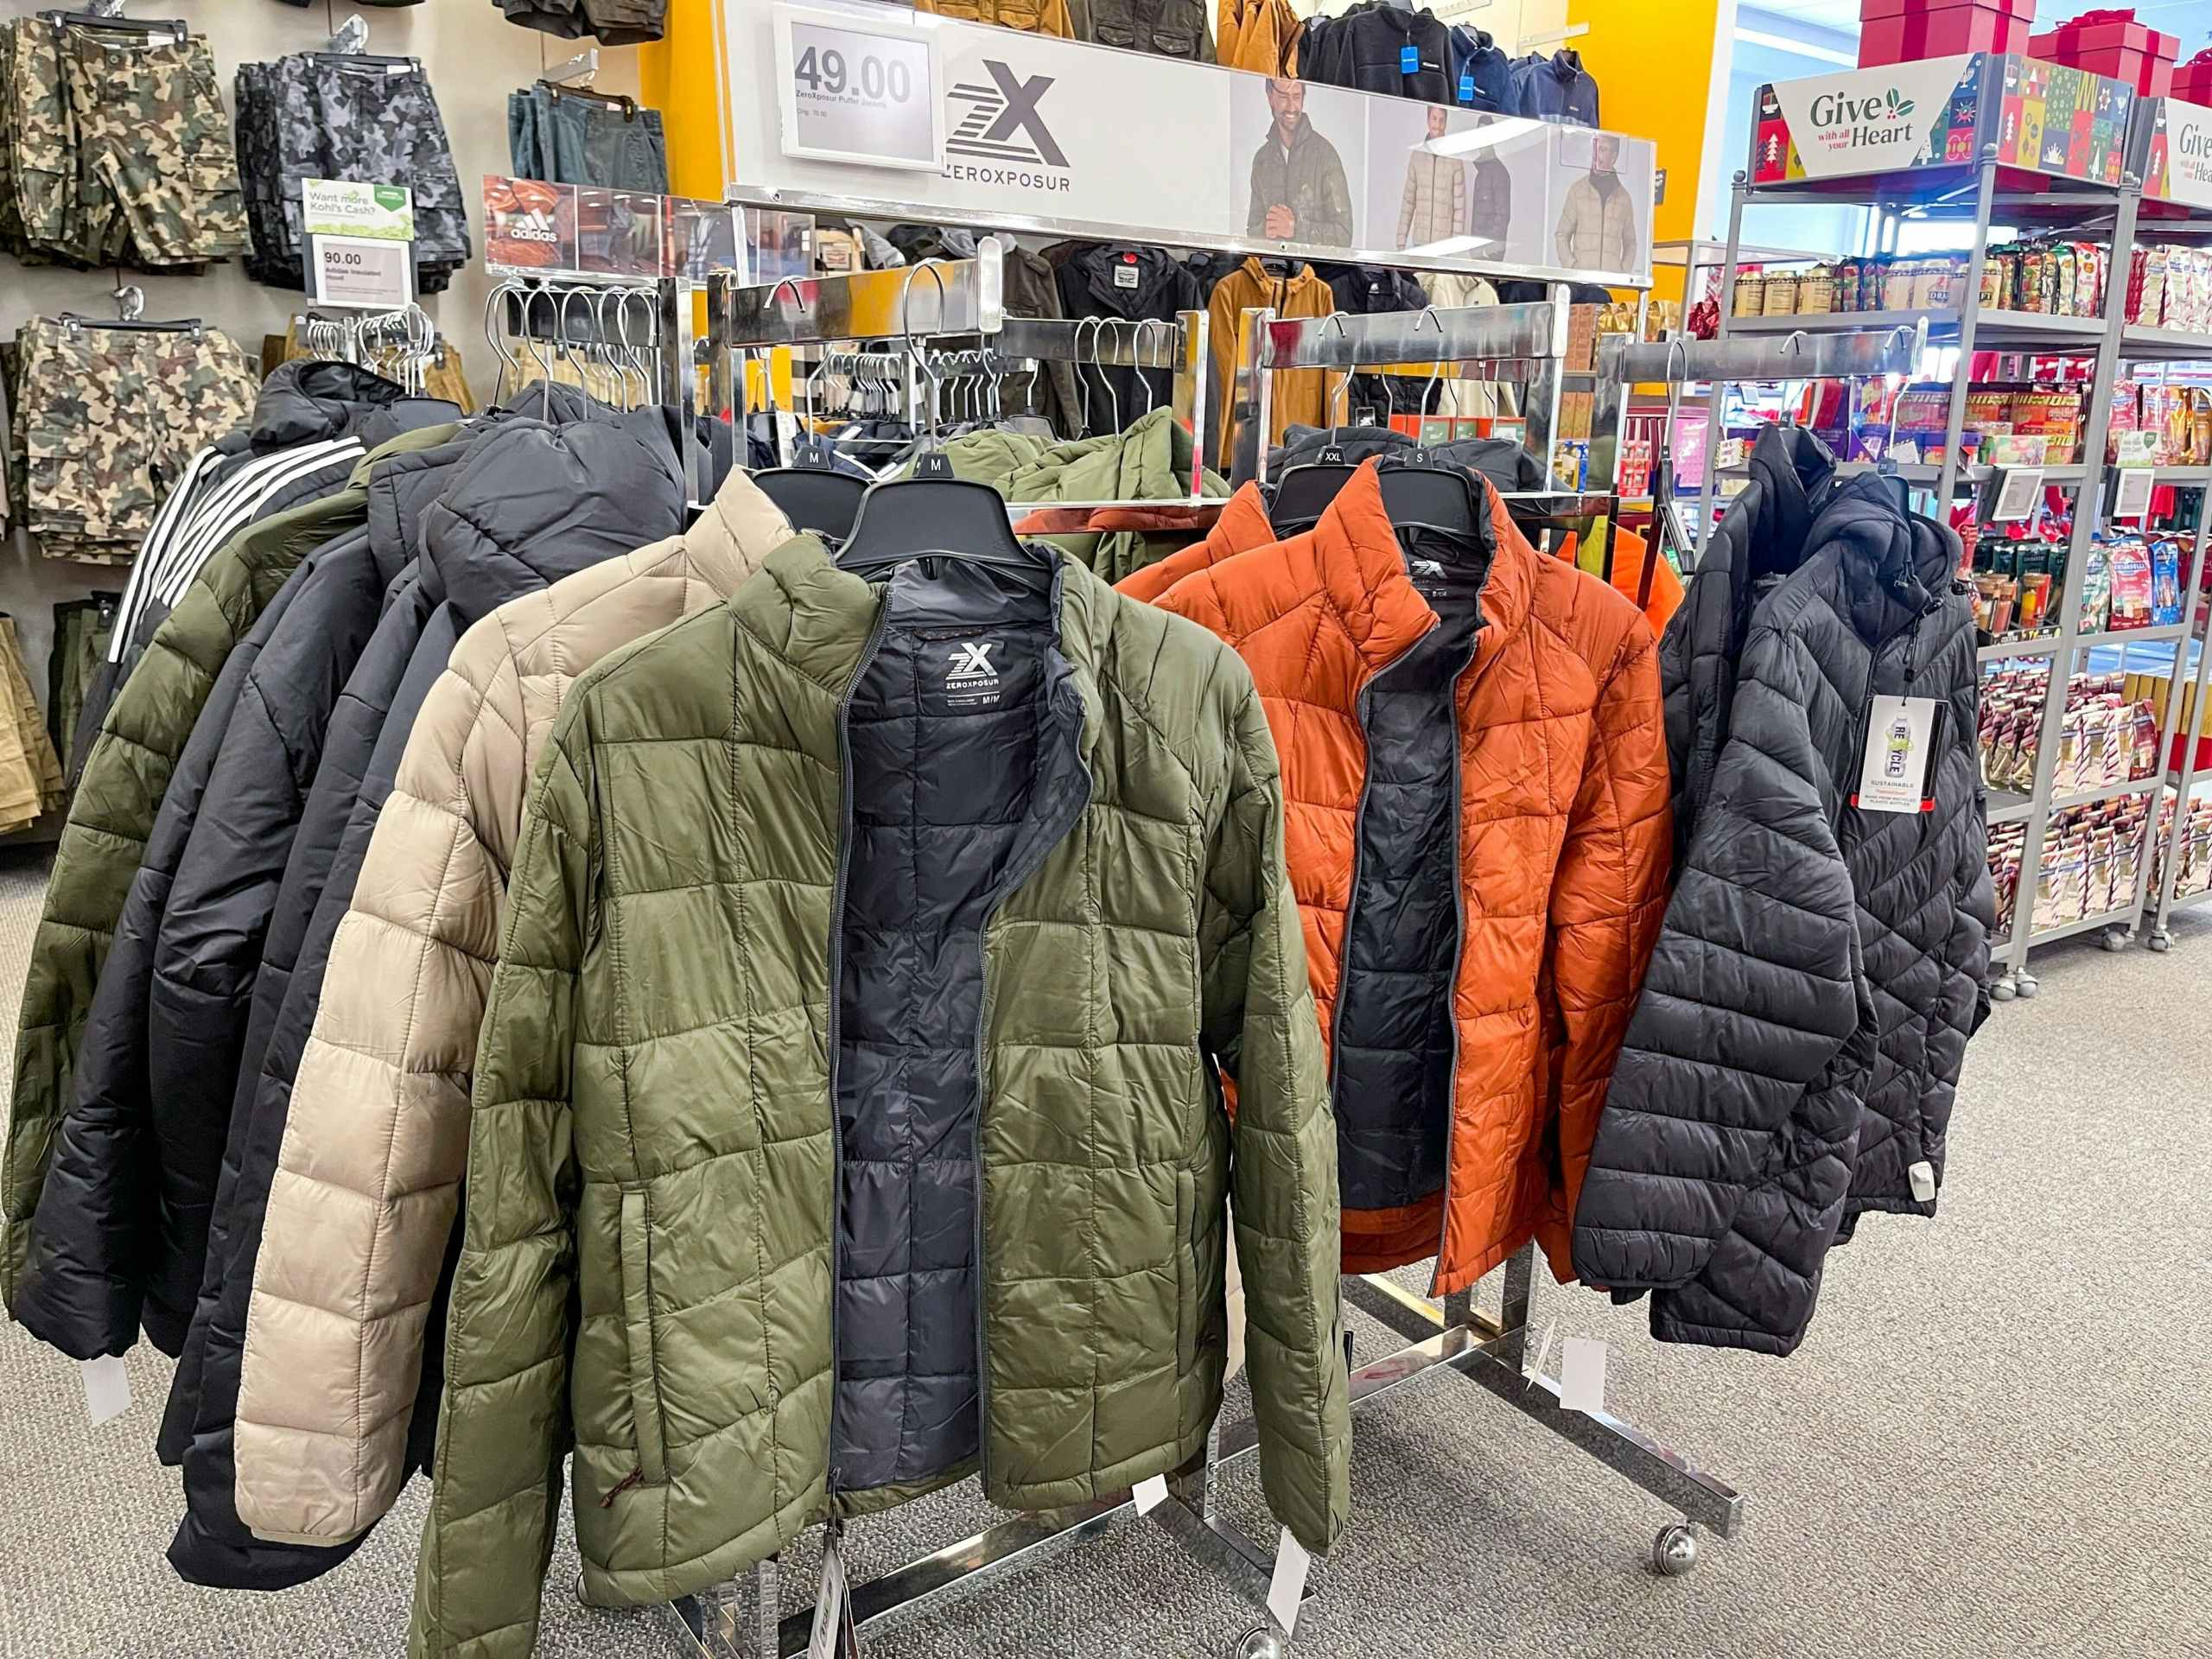 Rack of Zero Xposure puffer jackets